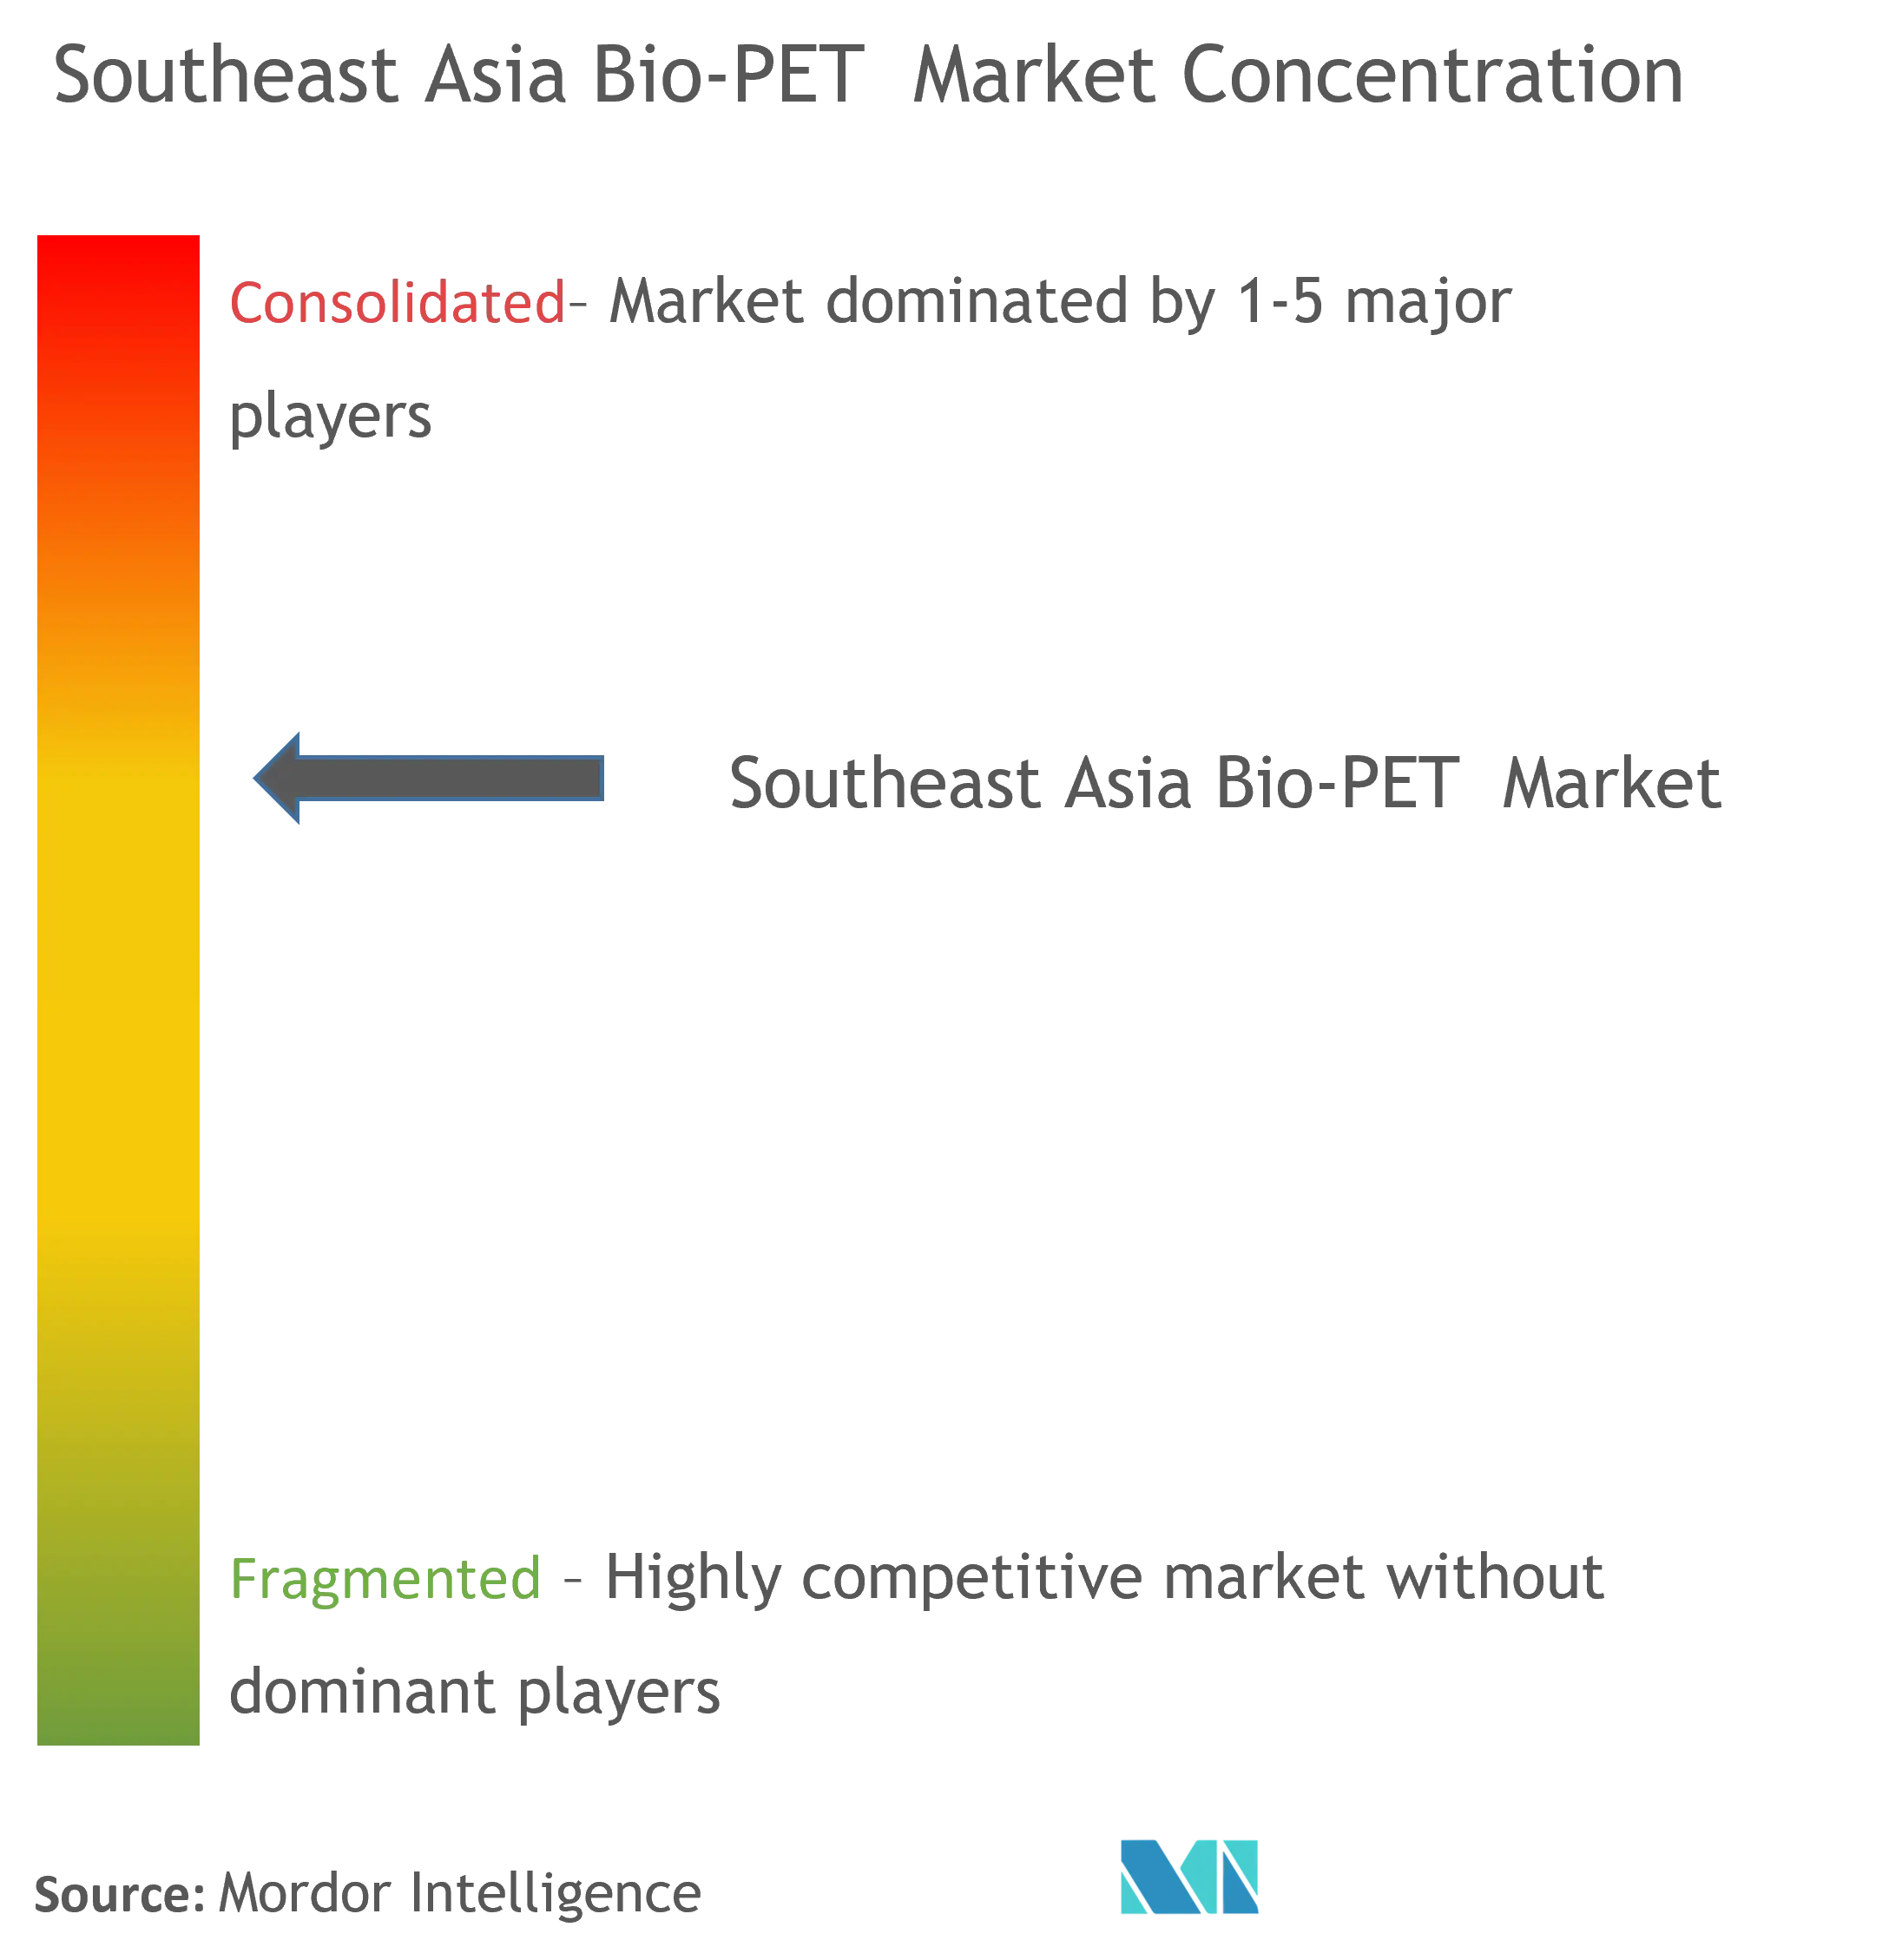 Southeast Asia Bio-PET Market Concentration